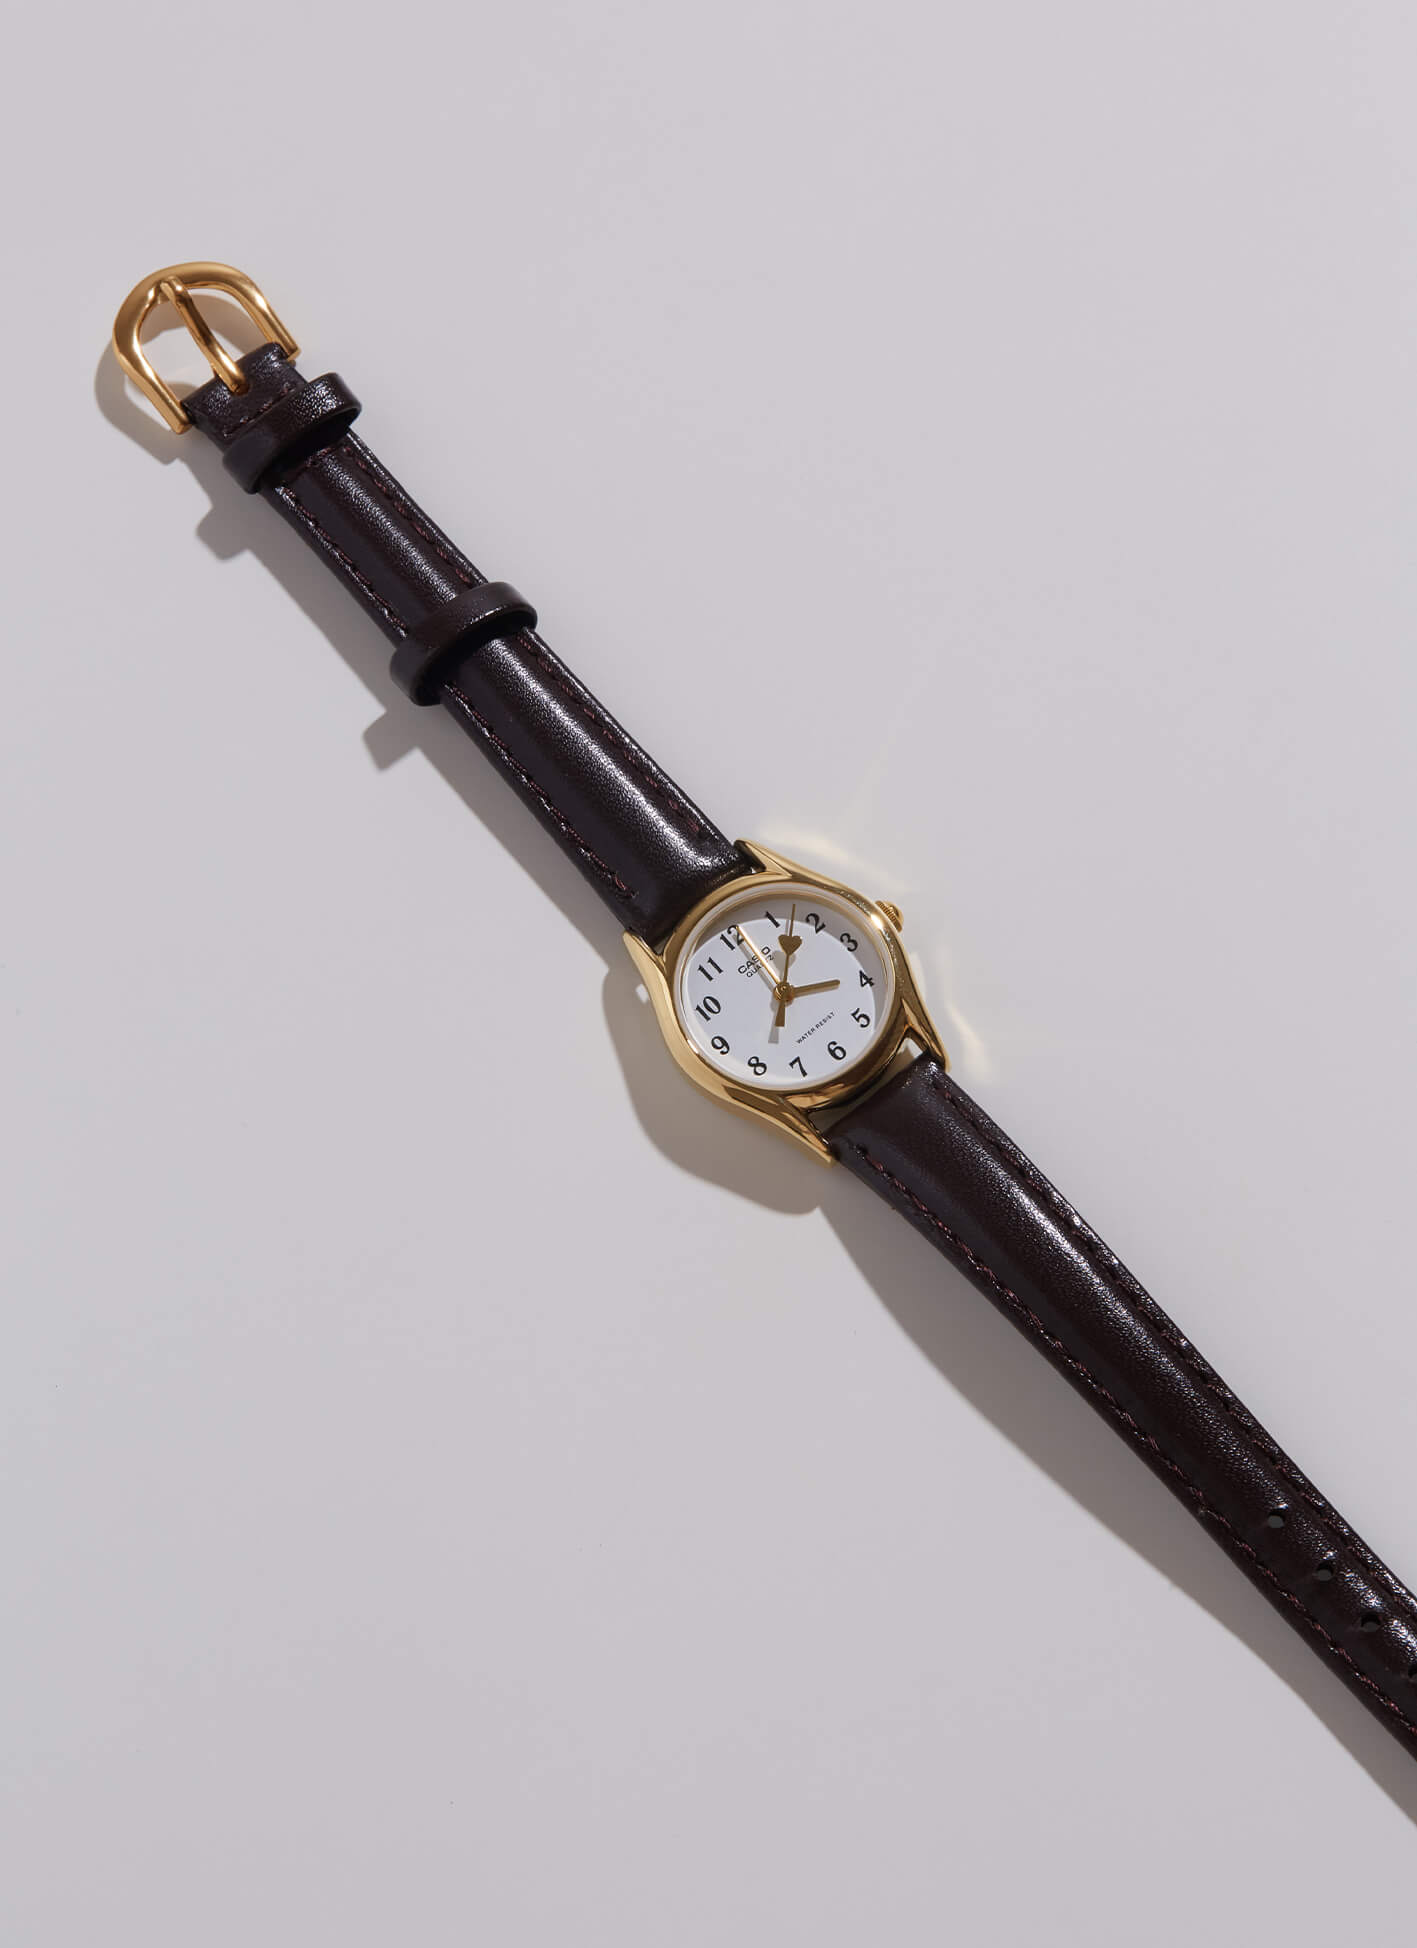 韓國飾品,手錶,CASIO手鍊,韓國手錶